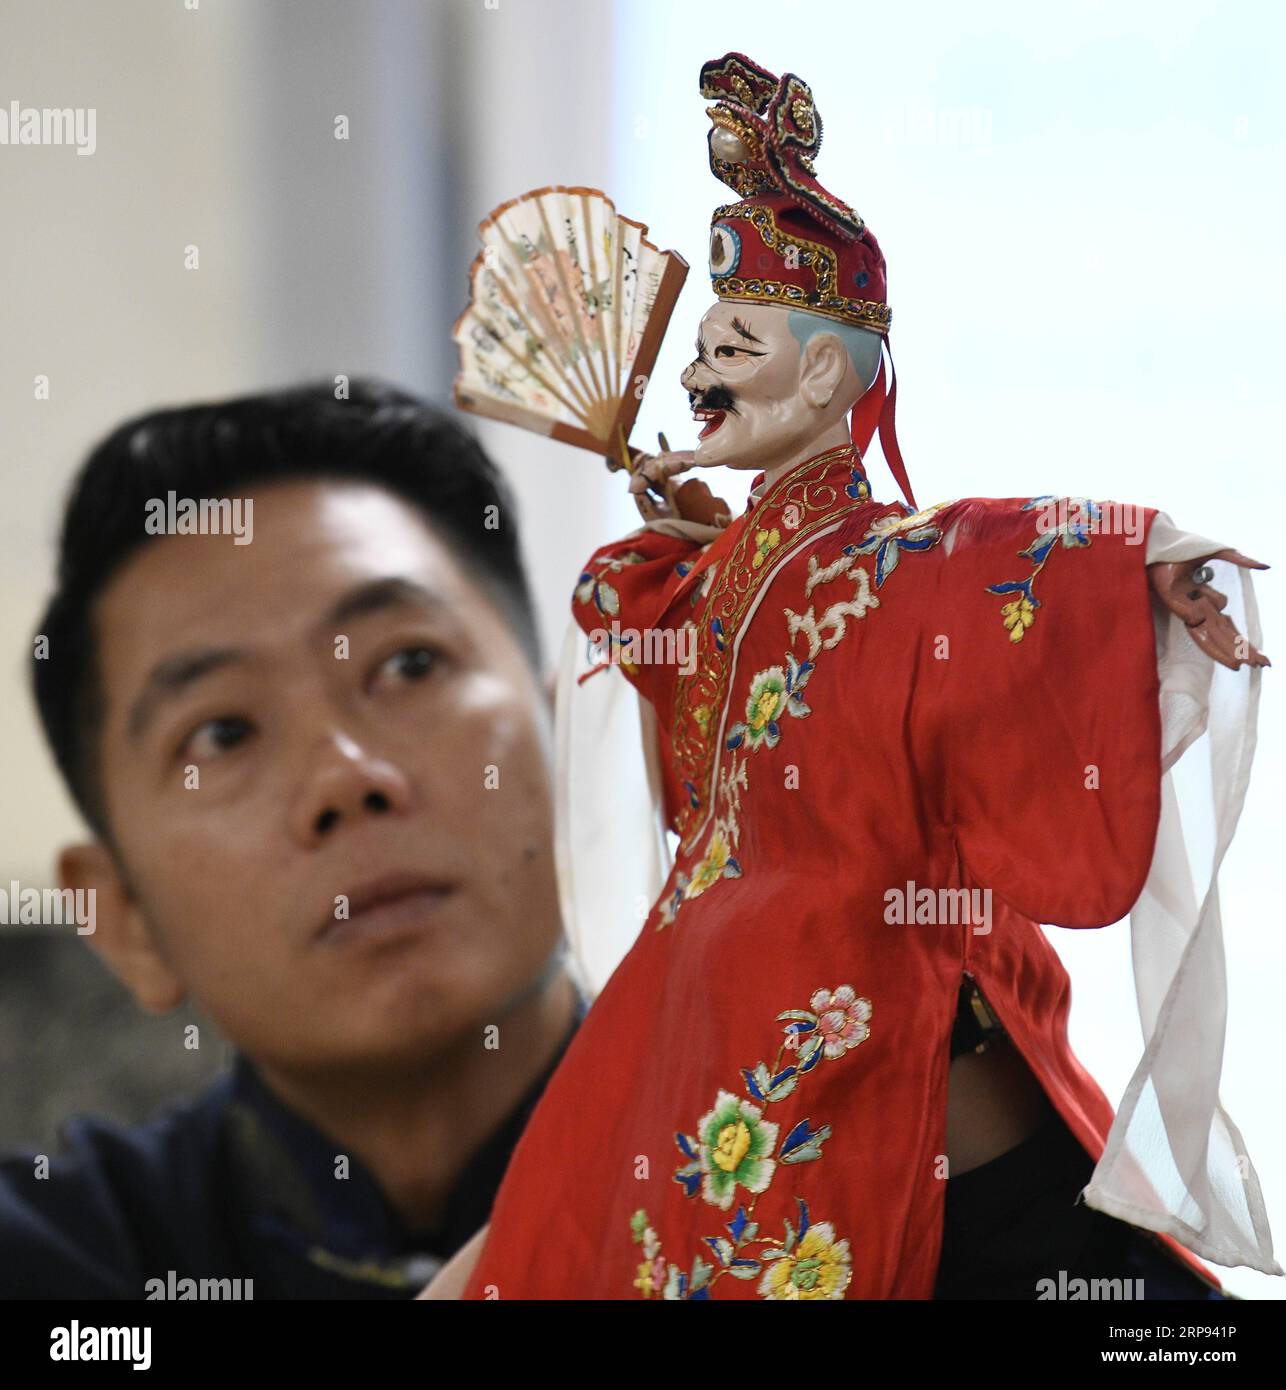 (190322) -- WASHINGTON, 22 marzo 2019 (Xinhua) -- Chen Lihui dalla città di Zhangzhou nella provincia del Fujian della Cina sud-orientale esegue Fujian Puppetry alla Paint Branch Elementary School nella Prince George S County, Maryland, Stati Uniti, 20 marzo 2019. IN PRIMO piano: L'artista cinese stupisce gli studenti statunitensi del Maryland con una mostra di marionette realistica (Xinhua/Liu Jie) U.S.-MARYLAND-FUJIAN PUBLICATIONxNOTxINxCHN Foto Stock